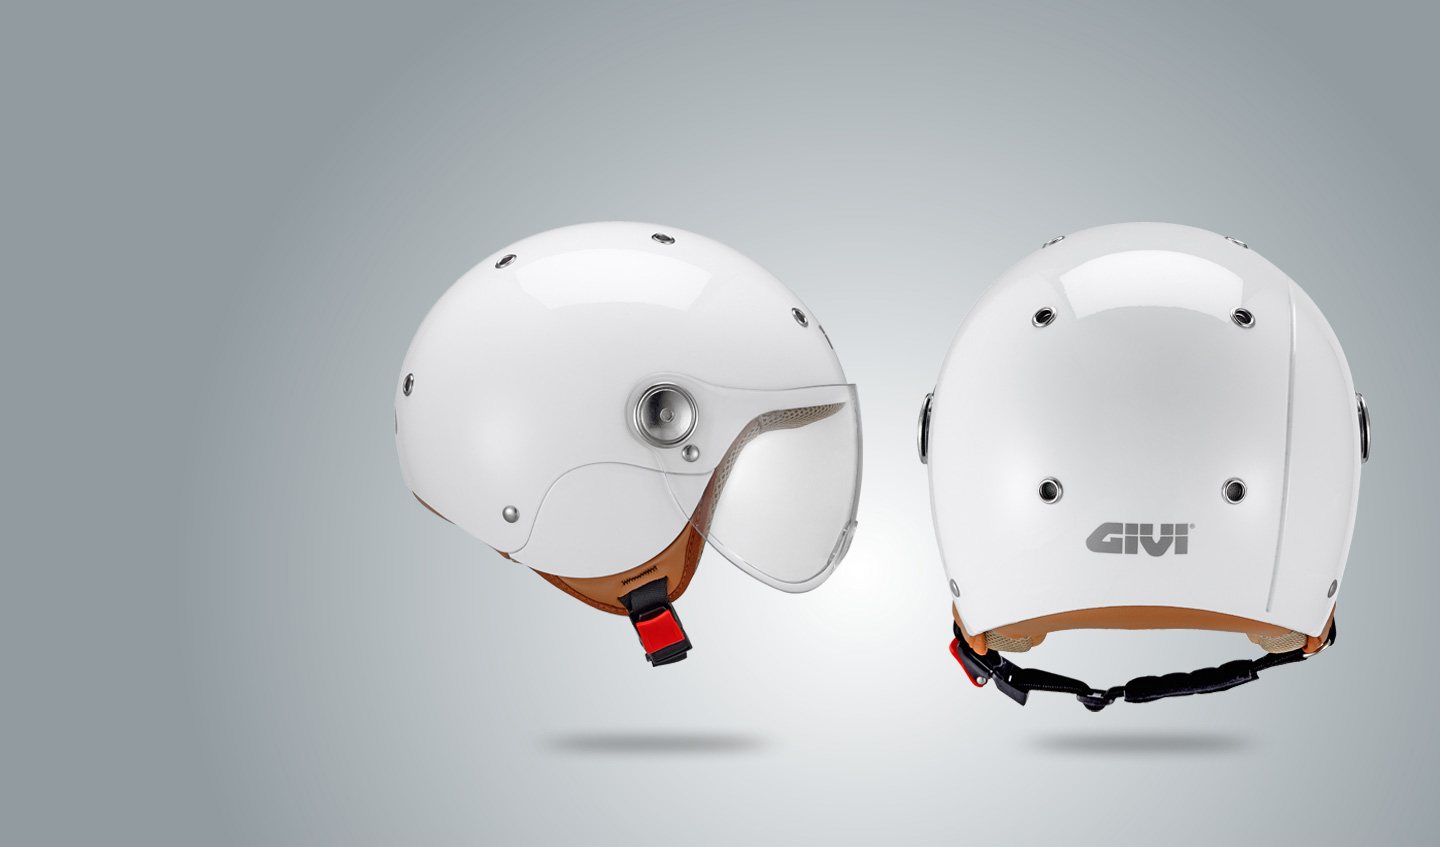 GIVI+lanza+el+nuevo+casco+para+ni%C3%B1os+J.03